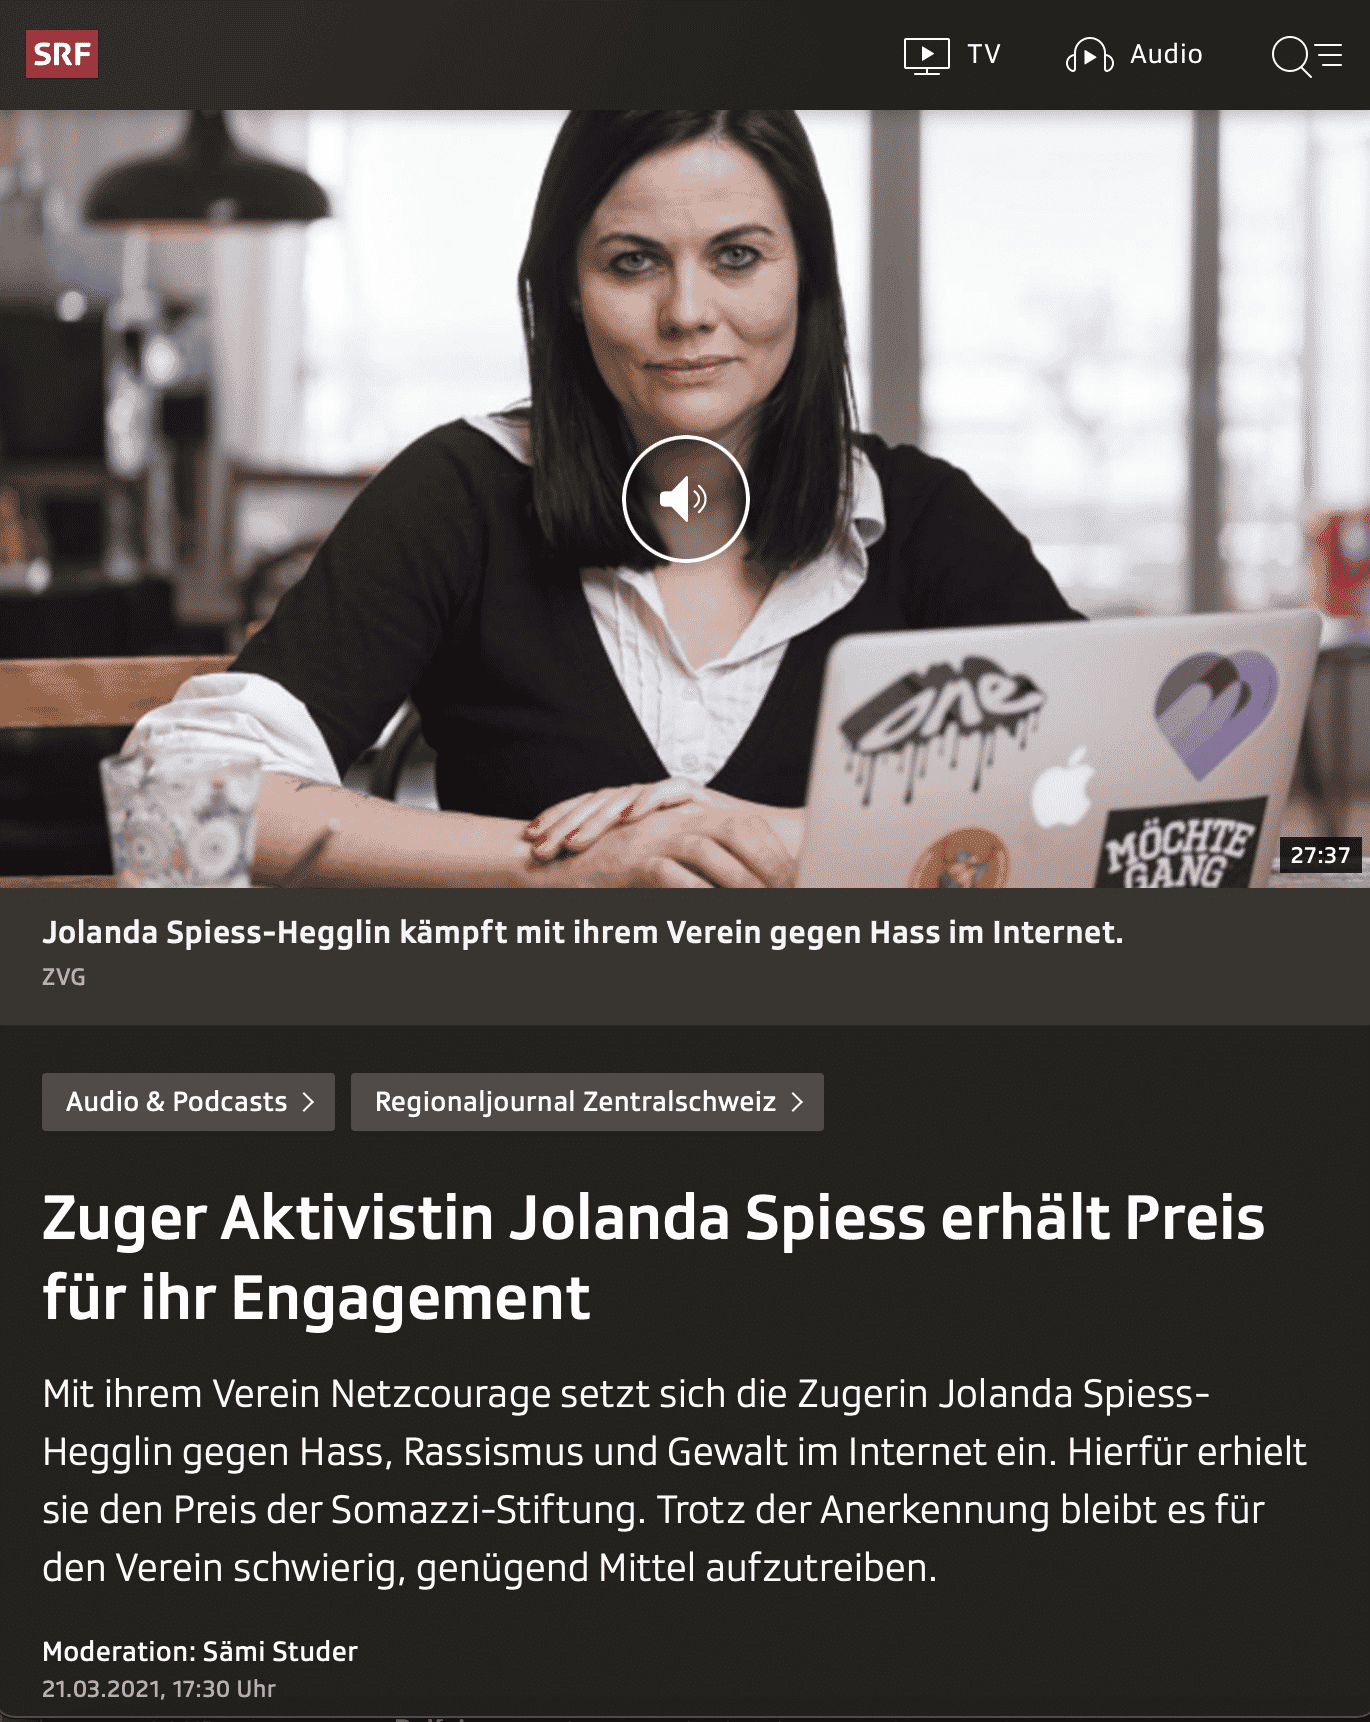 L’attivista zugo Jolanda Spiess riceve un premio per il suo impegno